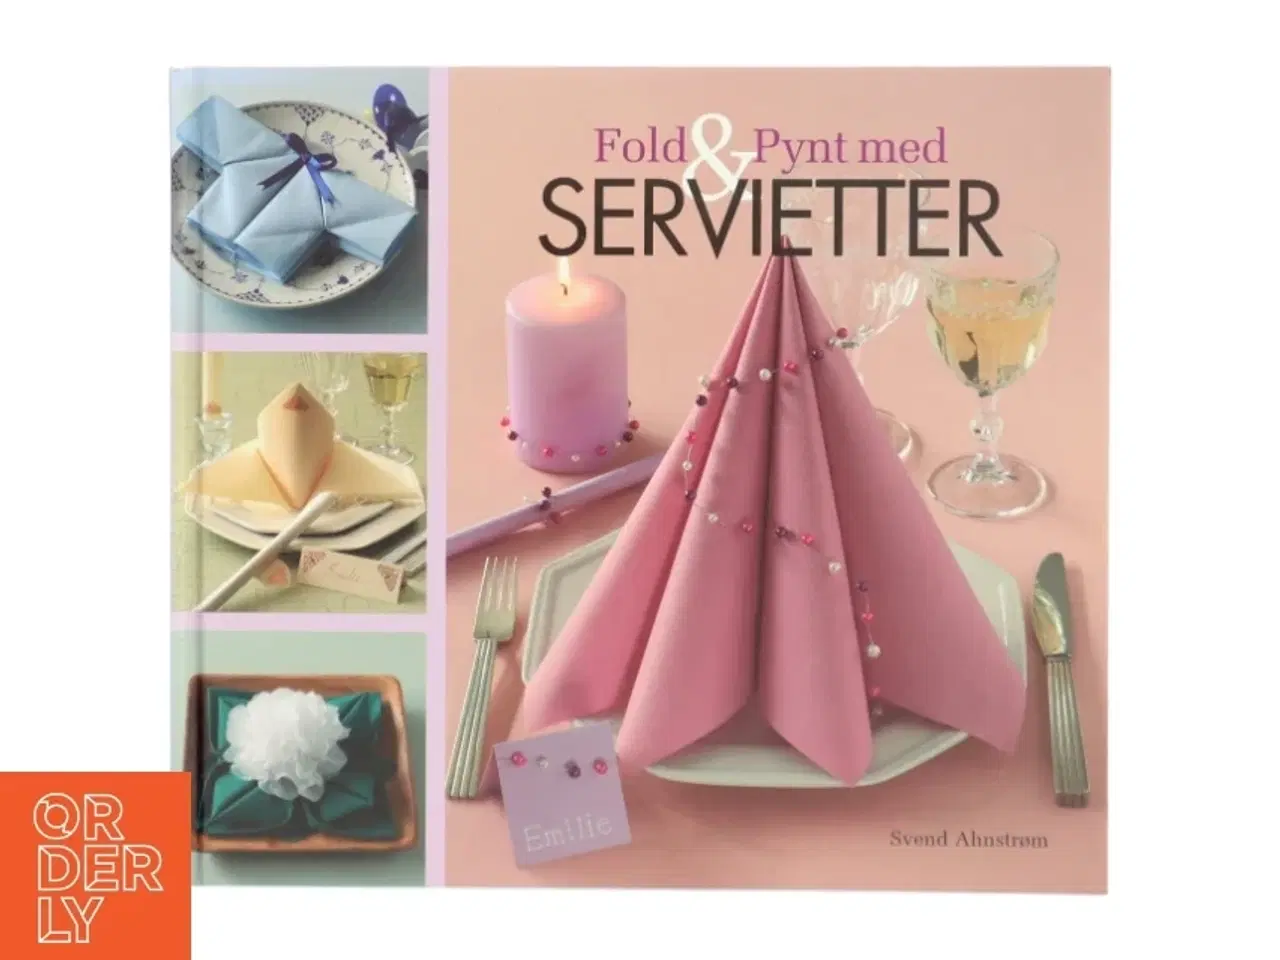 Billede 1 - 'Fold & Pynt med Servietter' af Svend Ahnstrøm (bog) fra Egmont